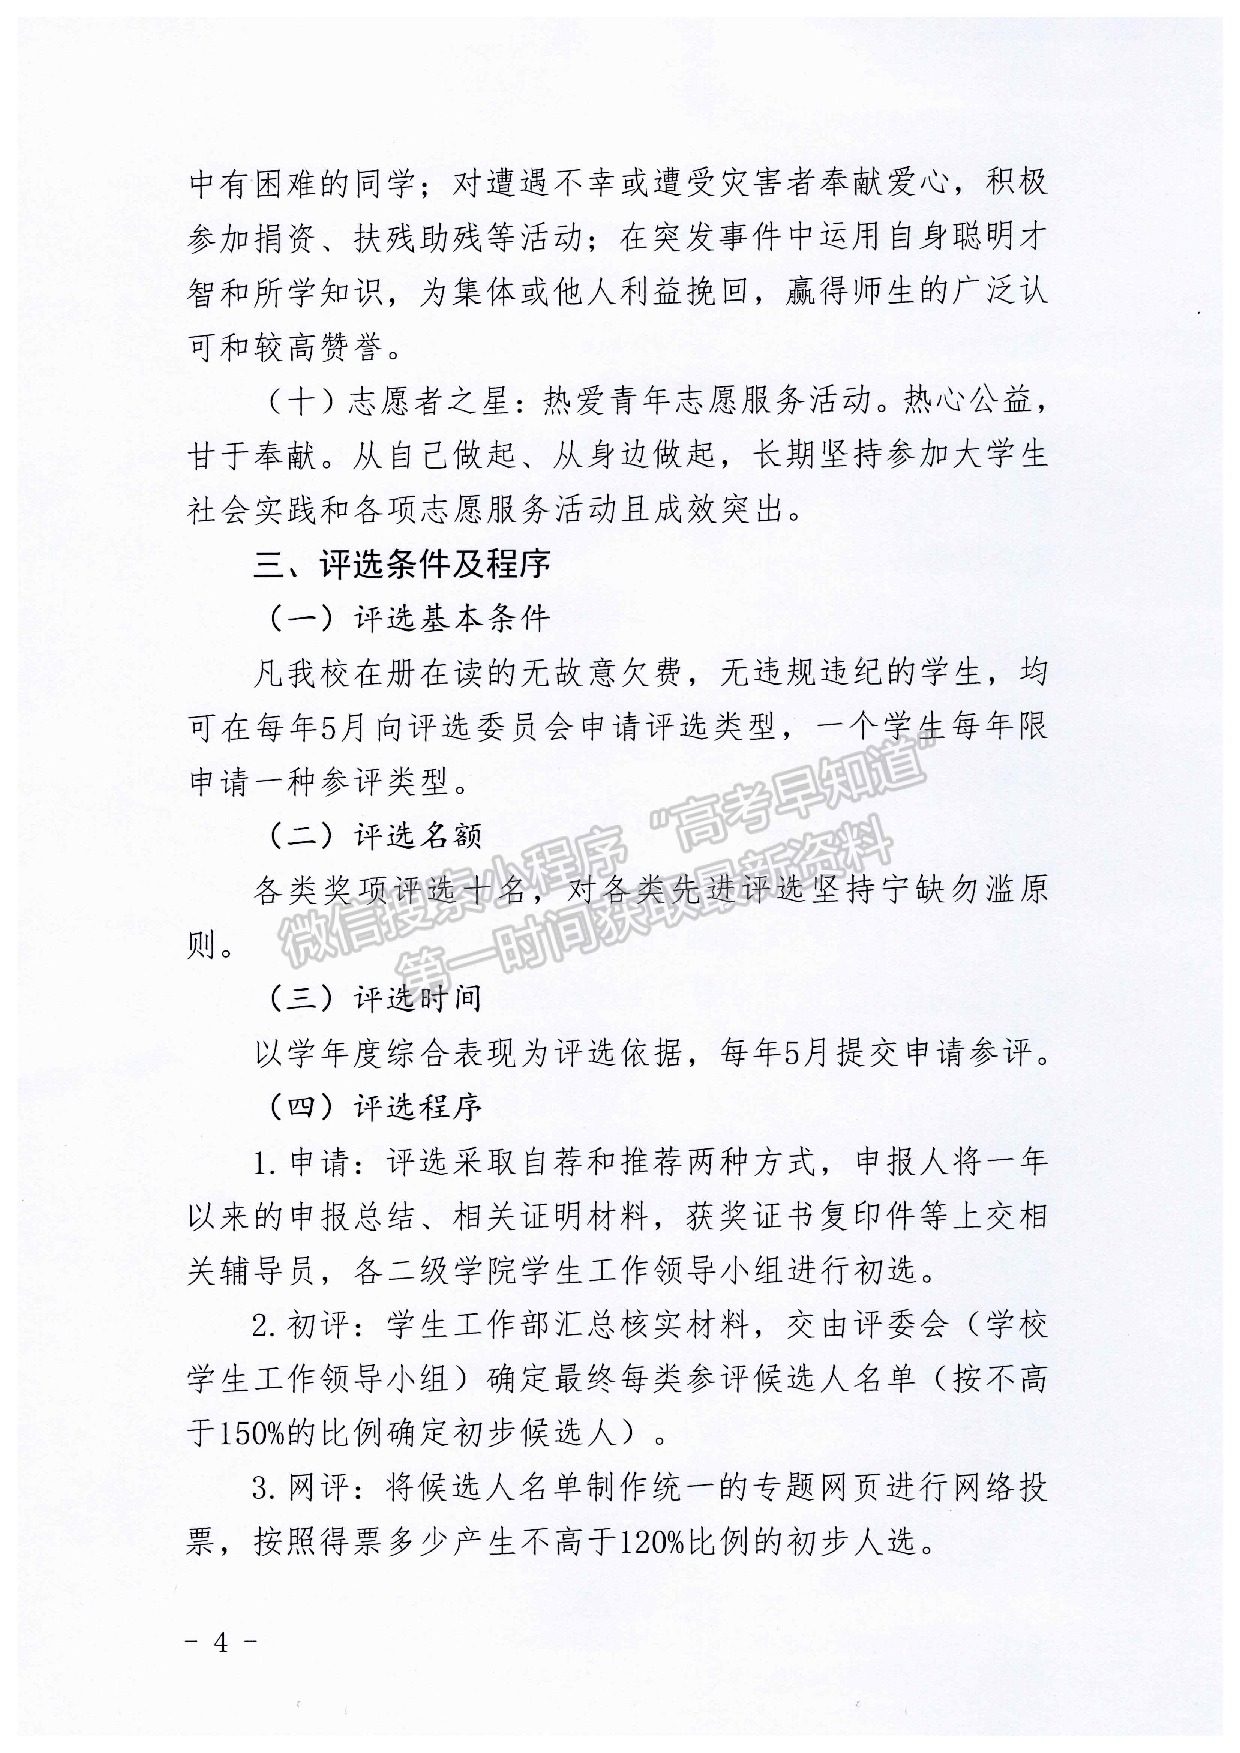 重庆工商大学派斯学院“派斯之星”评选实施办法